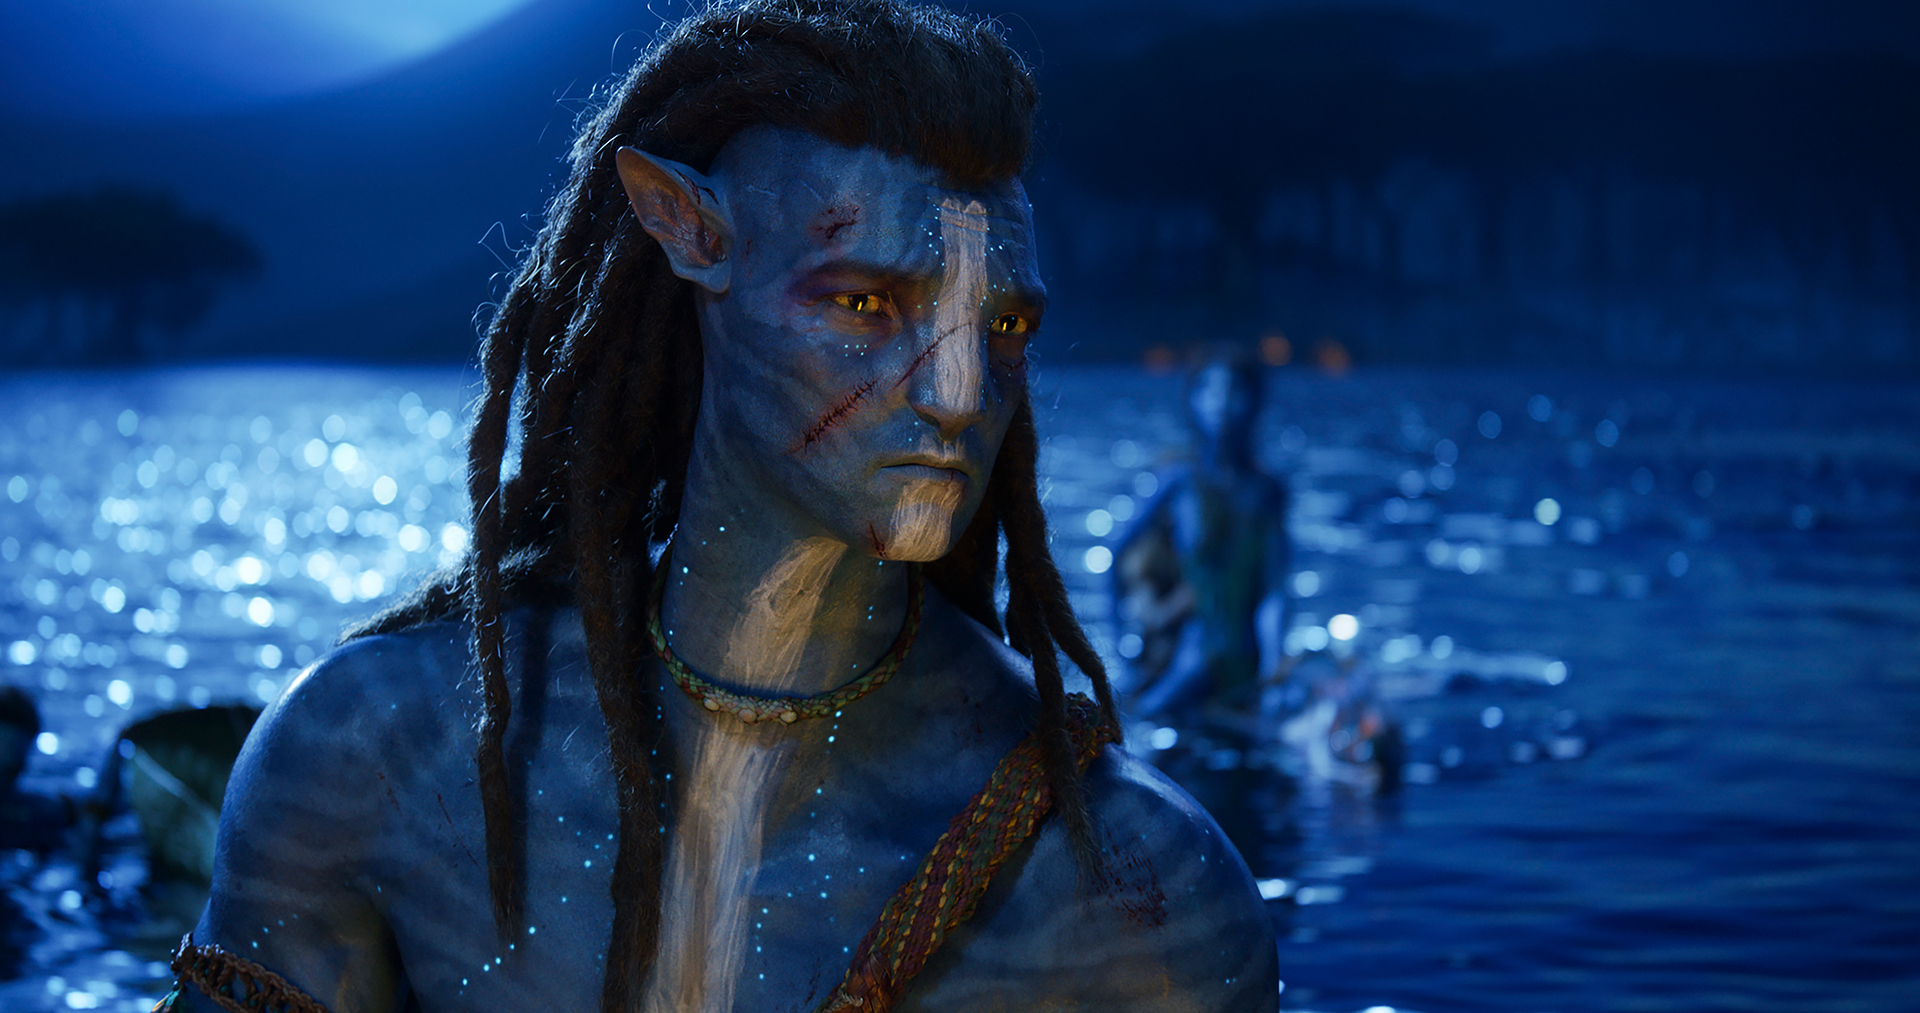 Trailer Mới Nhất Phim Avatar: Con Đường Nước vừa được công bố, đem đến cho khán giả những cảnh quay tuyệt đỉnh và đặc sắc. Bộ phim hứa hẹn mang đến cho khán giả những giây phút thư giãn và kích thích trí tưởng tượng. Sản xuất bởi Walt Disney Studios, hi vọng bộ phim sẽ trở thành một tác phẩm đáng xem của năm